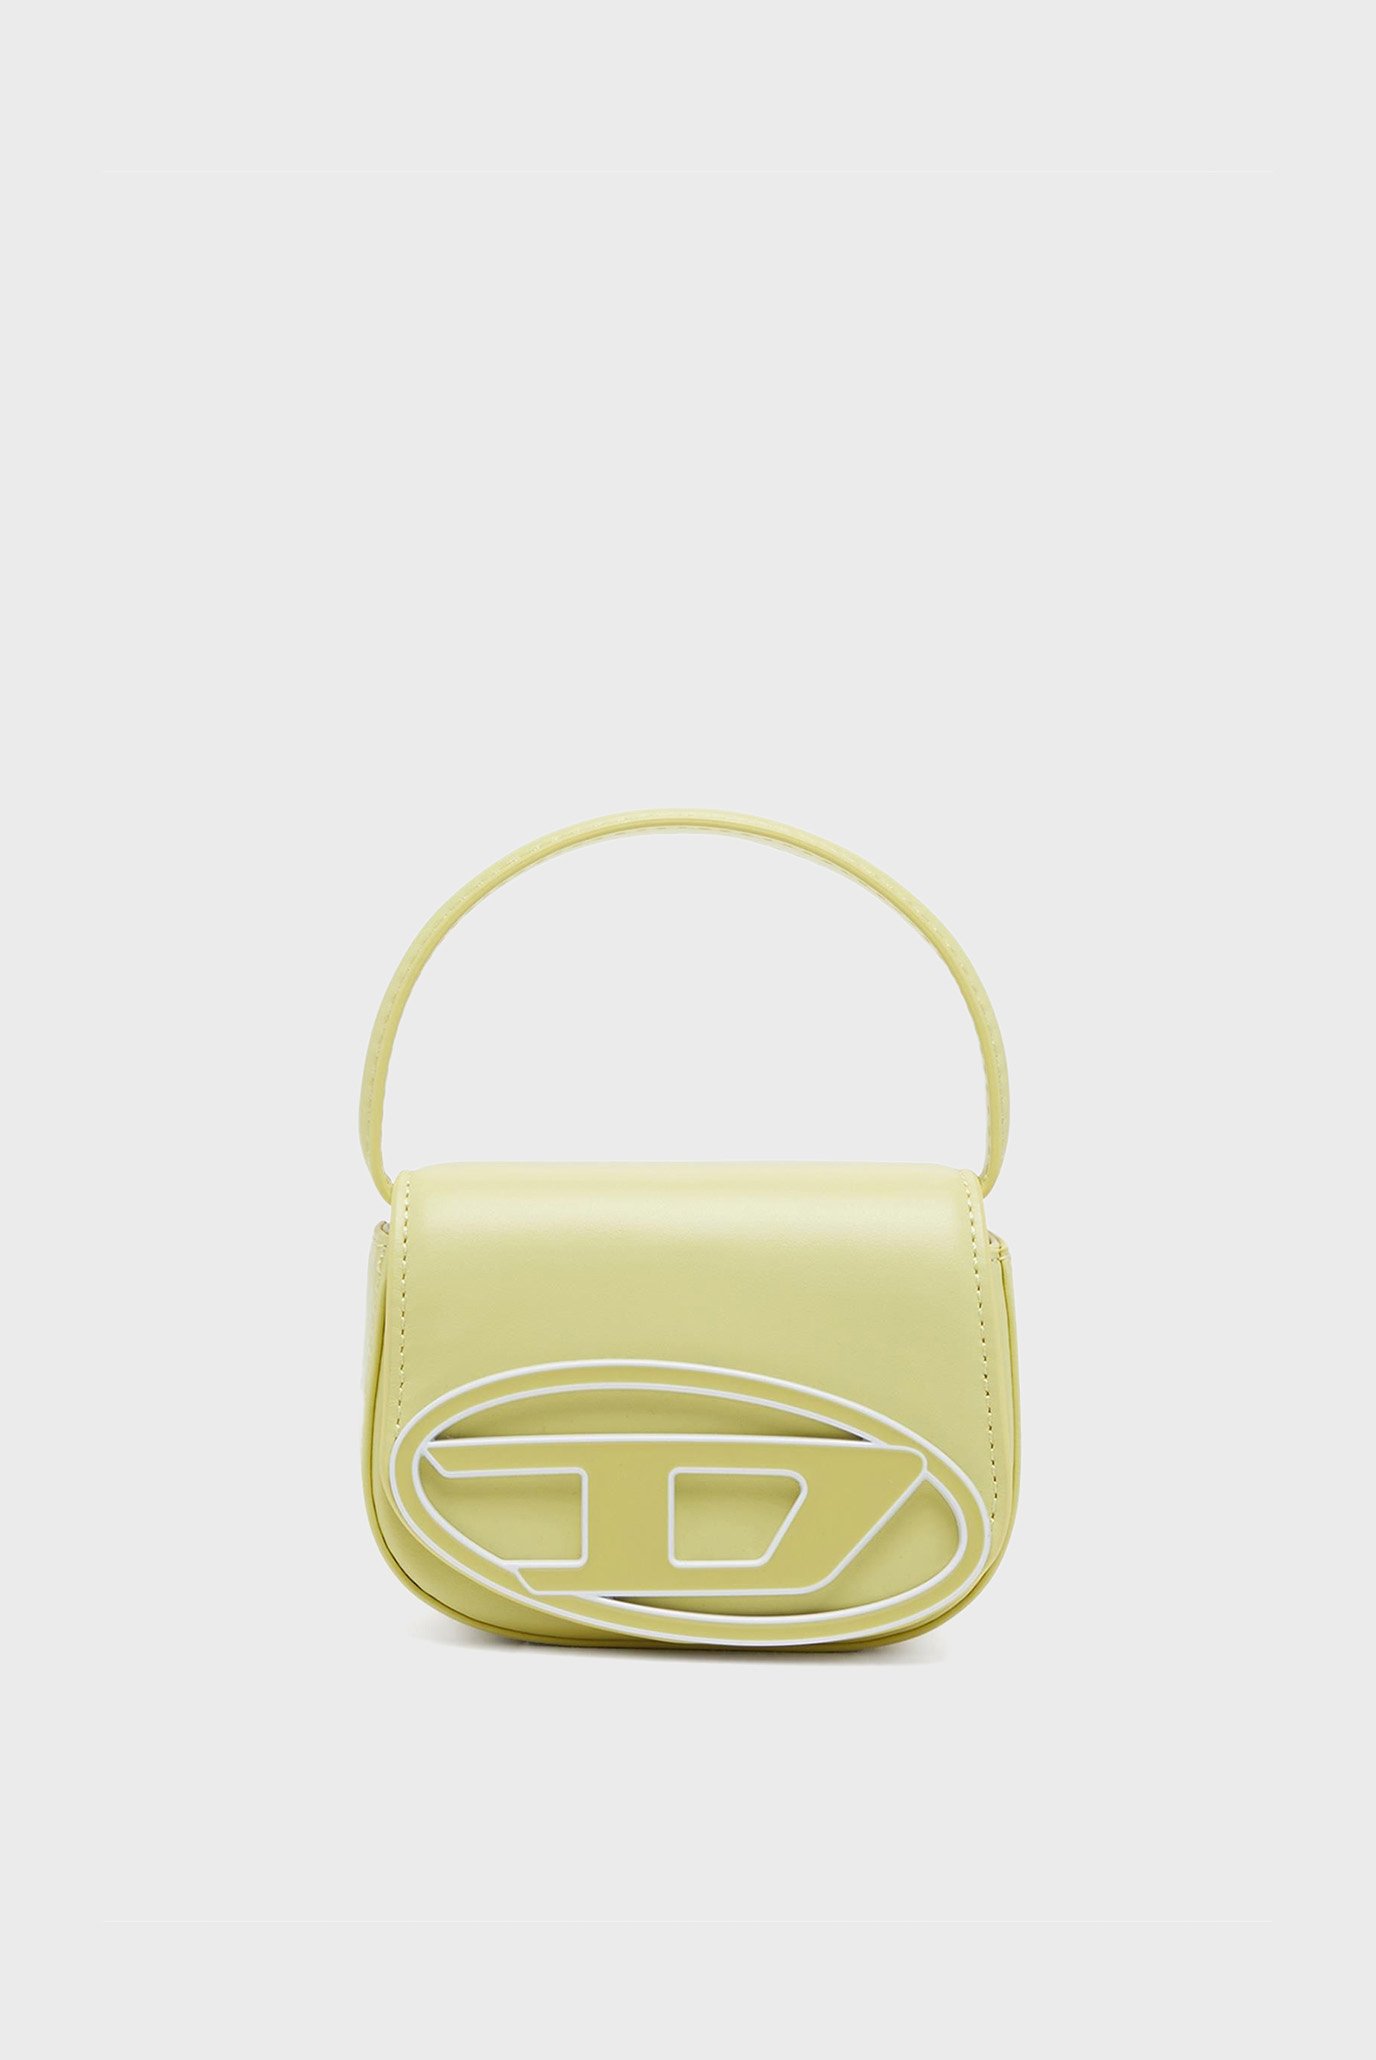 Жіноча жовта шкіряна сумка 1DR XS 1